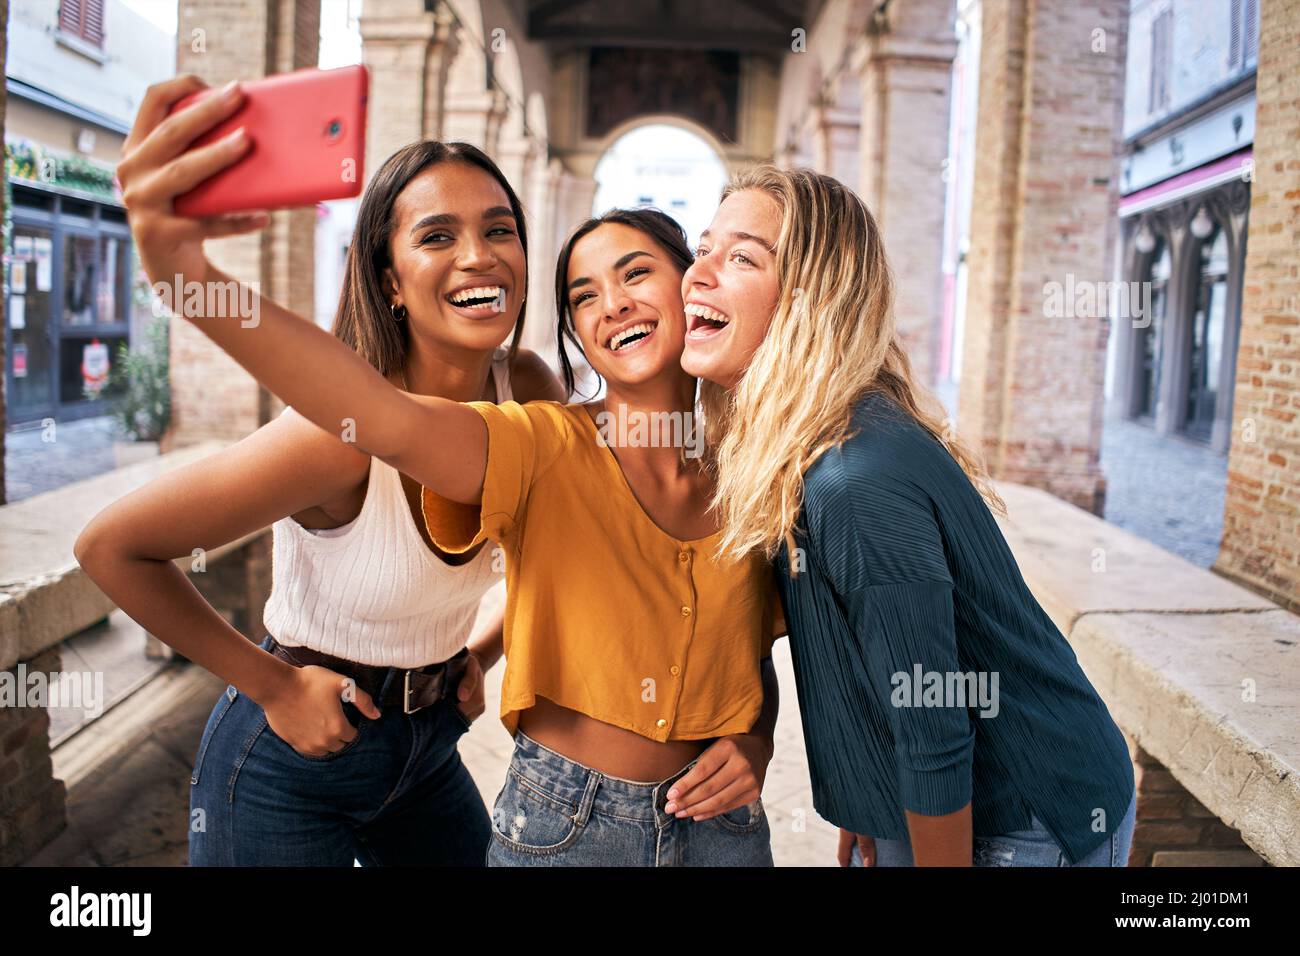 Drei fröhliche Freundinnen in Sommerkleidung, die ein Selfie im Freien in der touristischen Stadt im Stadtzentrum machen Stockfoto